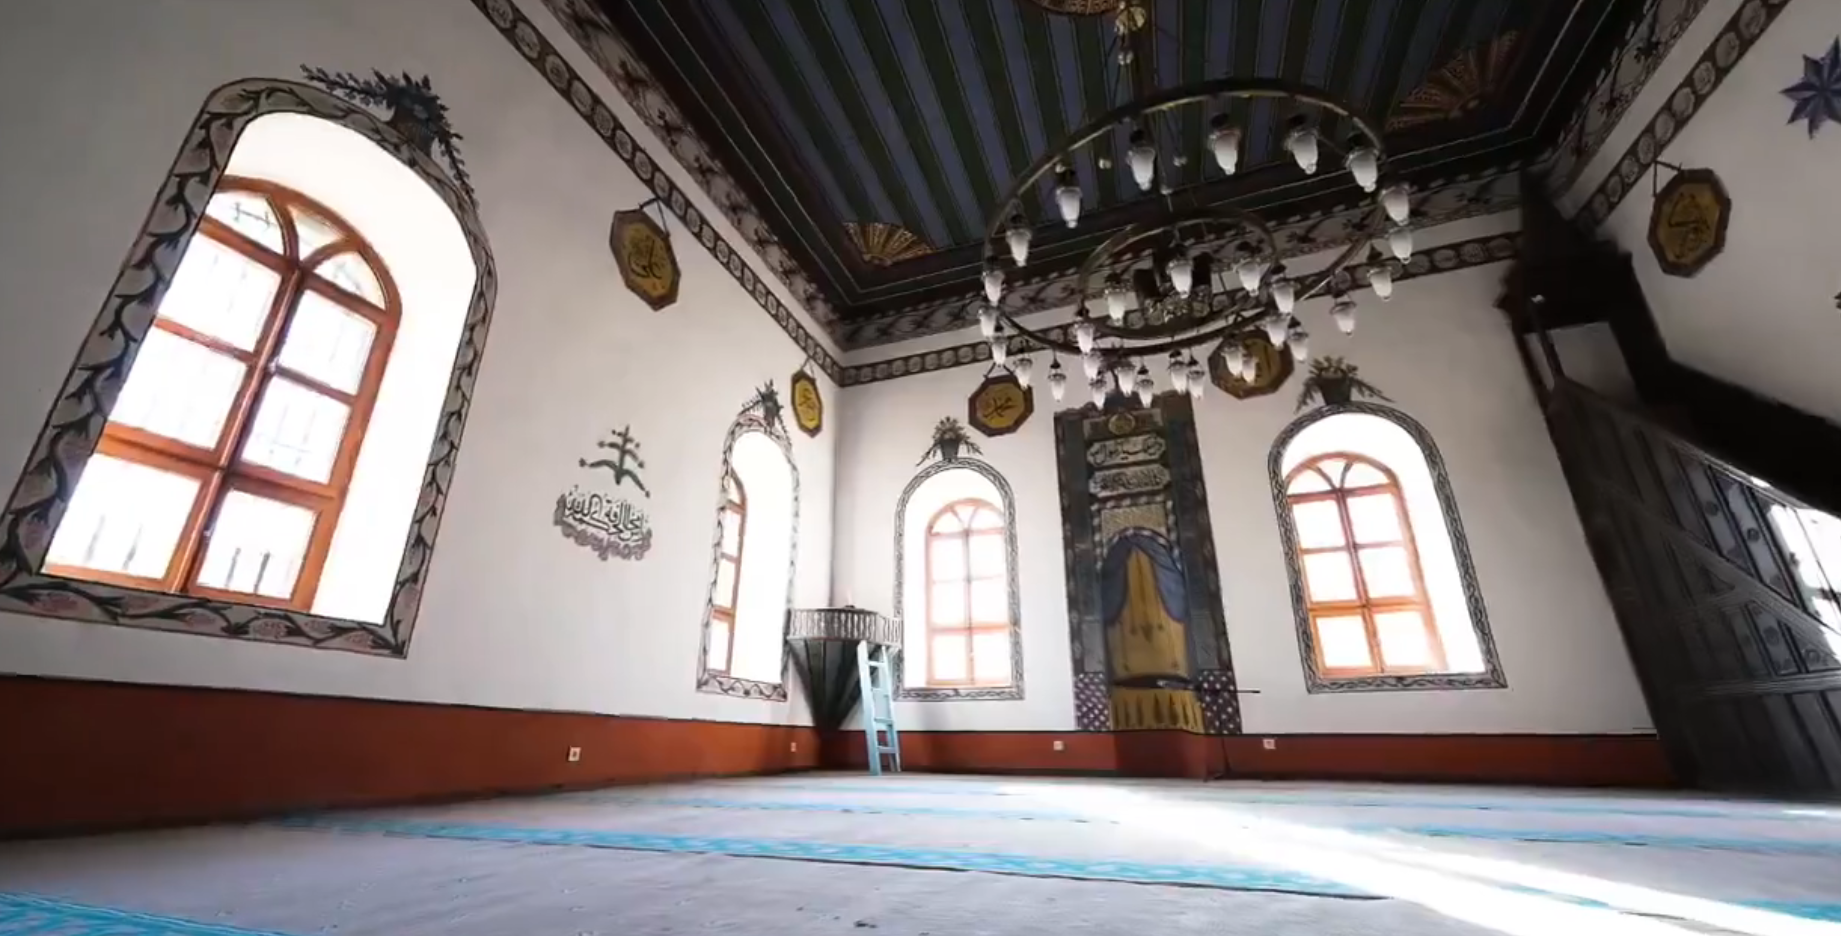 Haymana Belediyesi, Karahoca Eski Camii'ni Restorasyon Ile Koruma Altına Aldı (2)